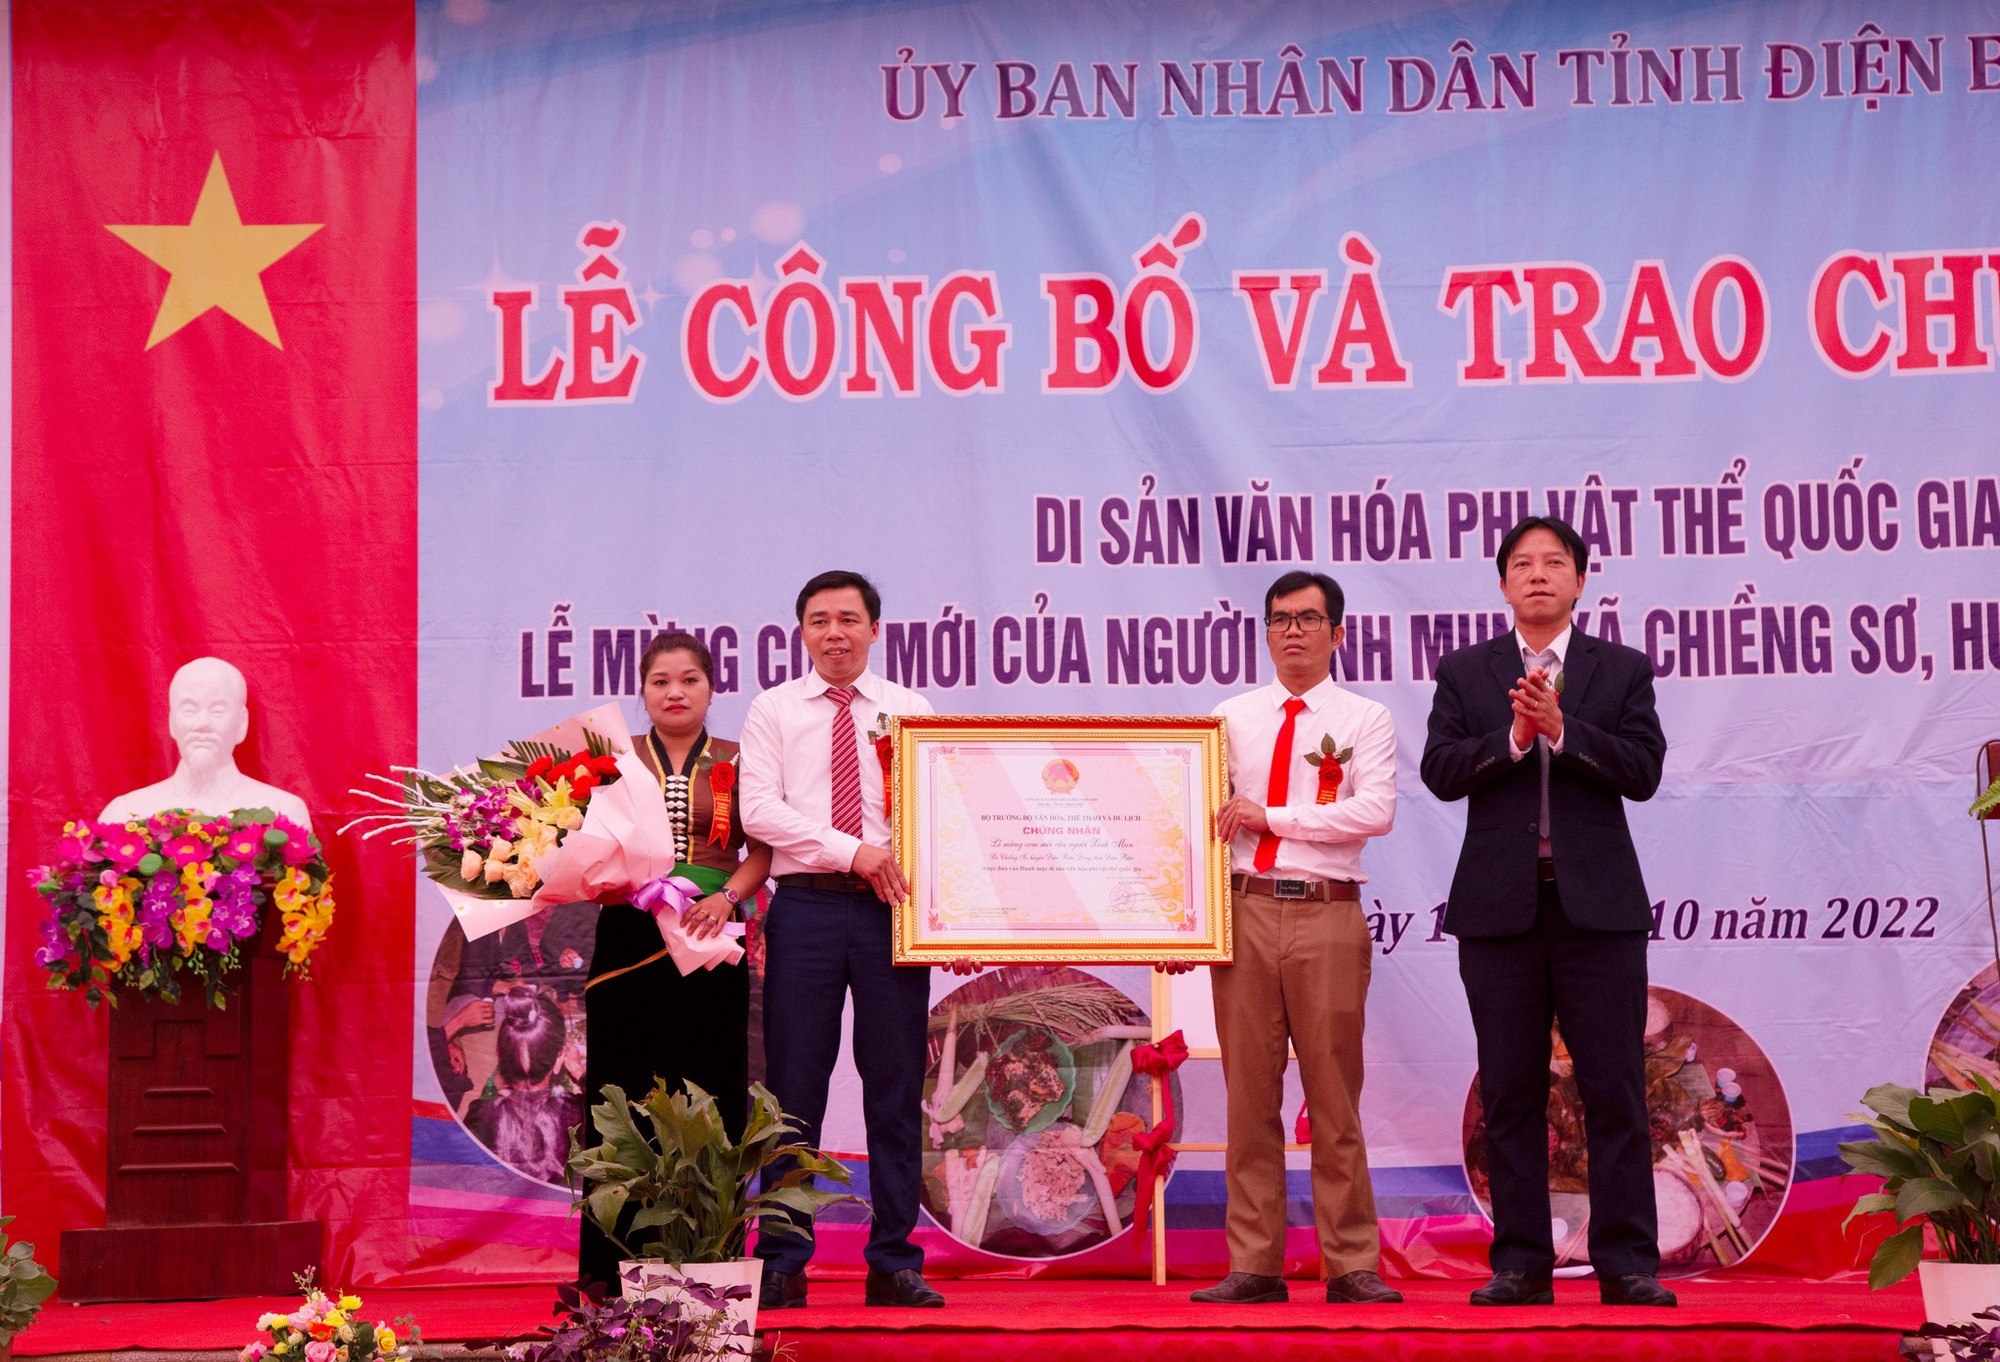  Điện Biên: Lễ Mừng cơm mới của người Xinh Mun được công nhận là di sản văn hoá phi vật quốc gia - Ảnh 3.